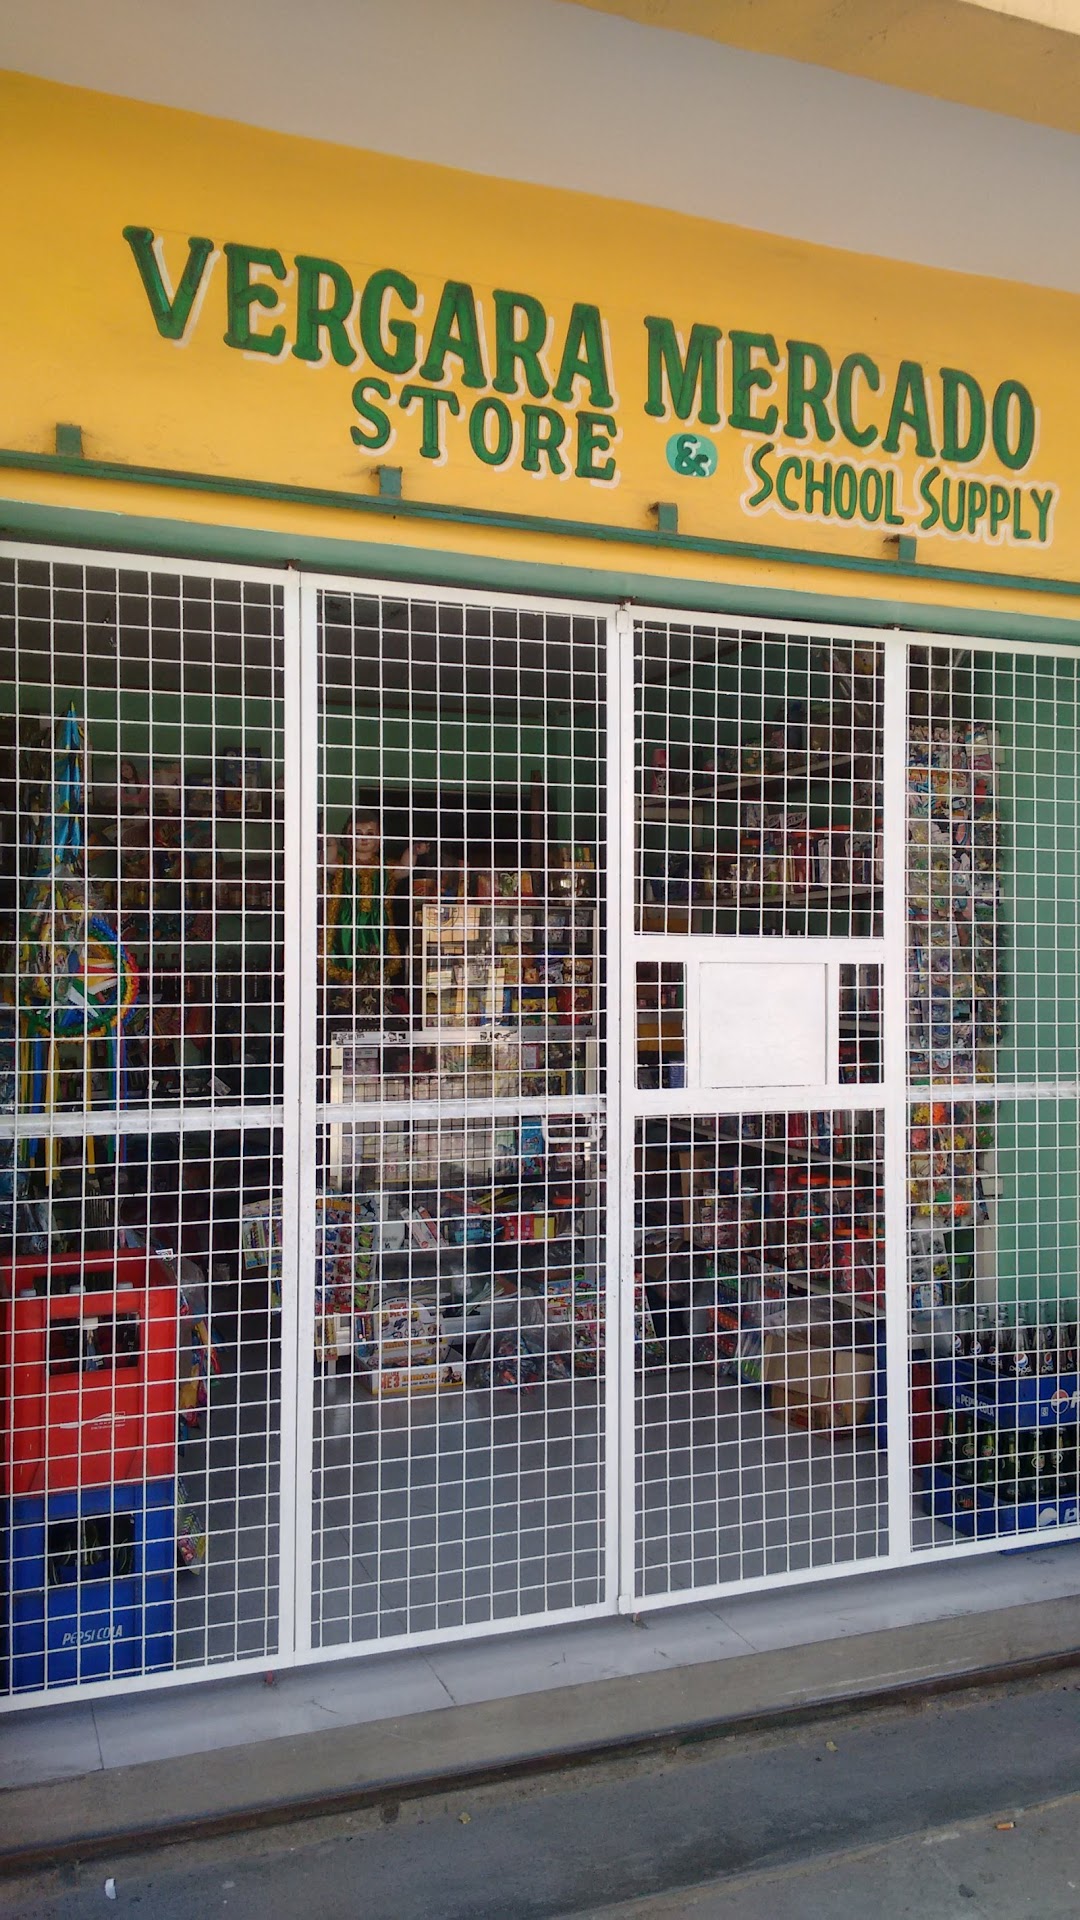 Vergara Mercado Store & School Supply